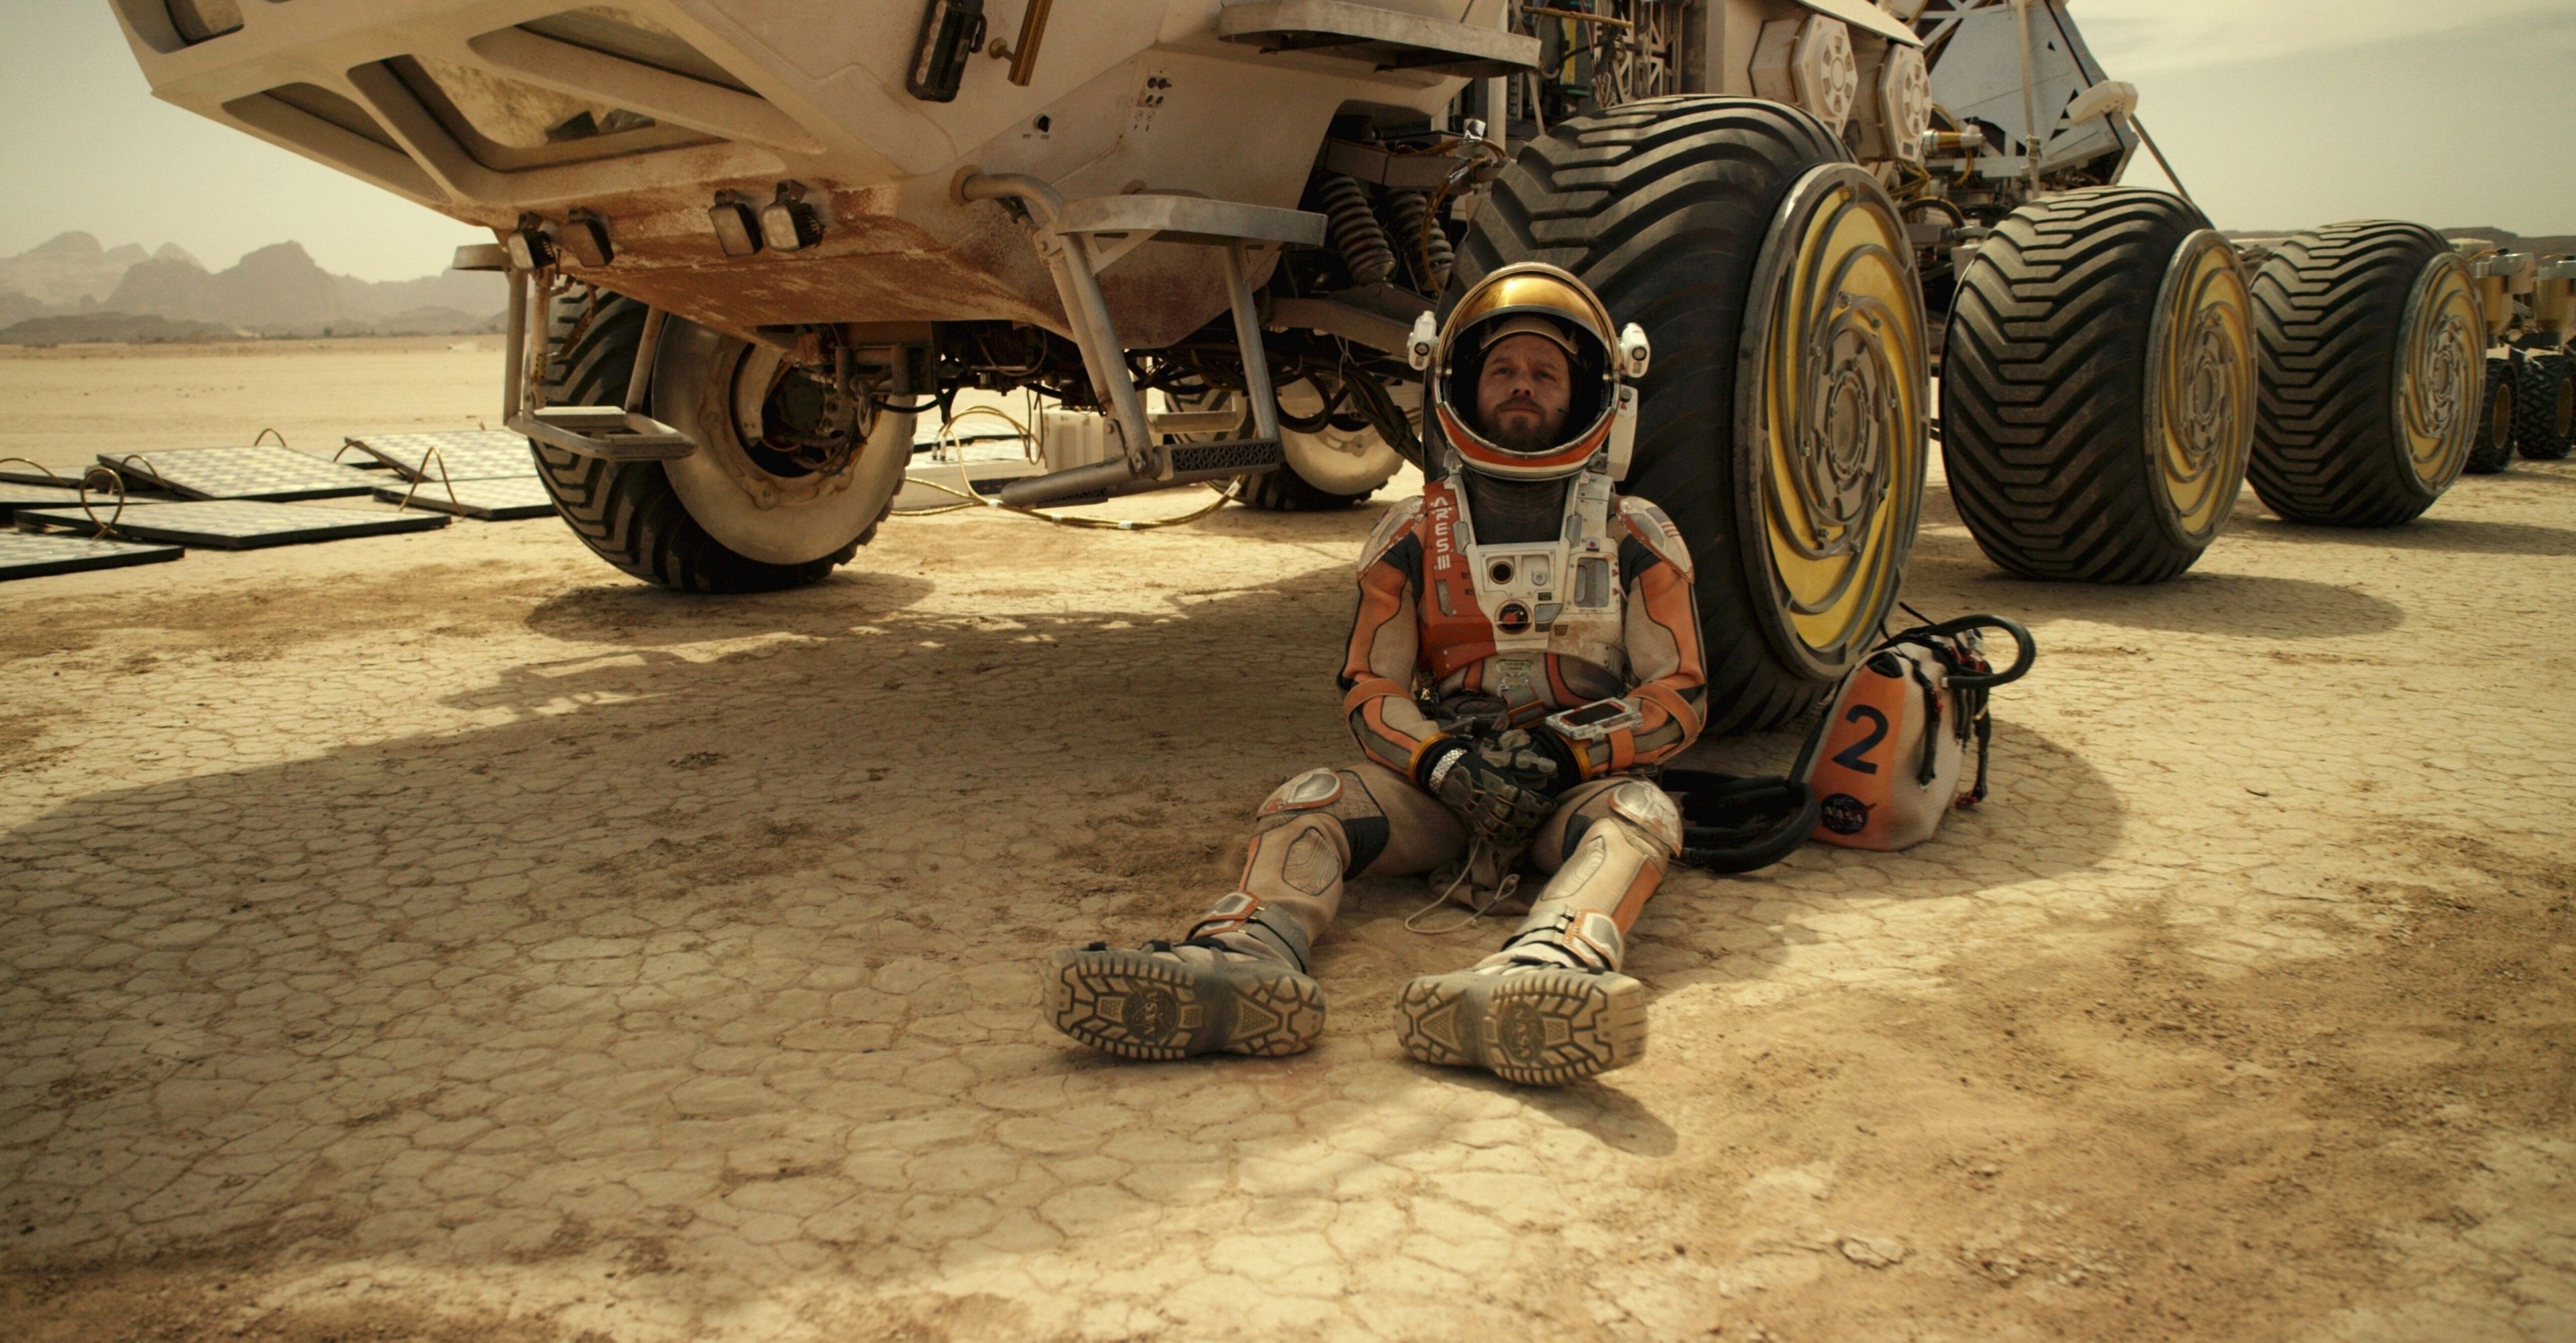 Matt Damon, The Martian 4K, HD wallpaper, Mars exploration, 3840x2010 HD Desktop